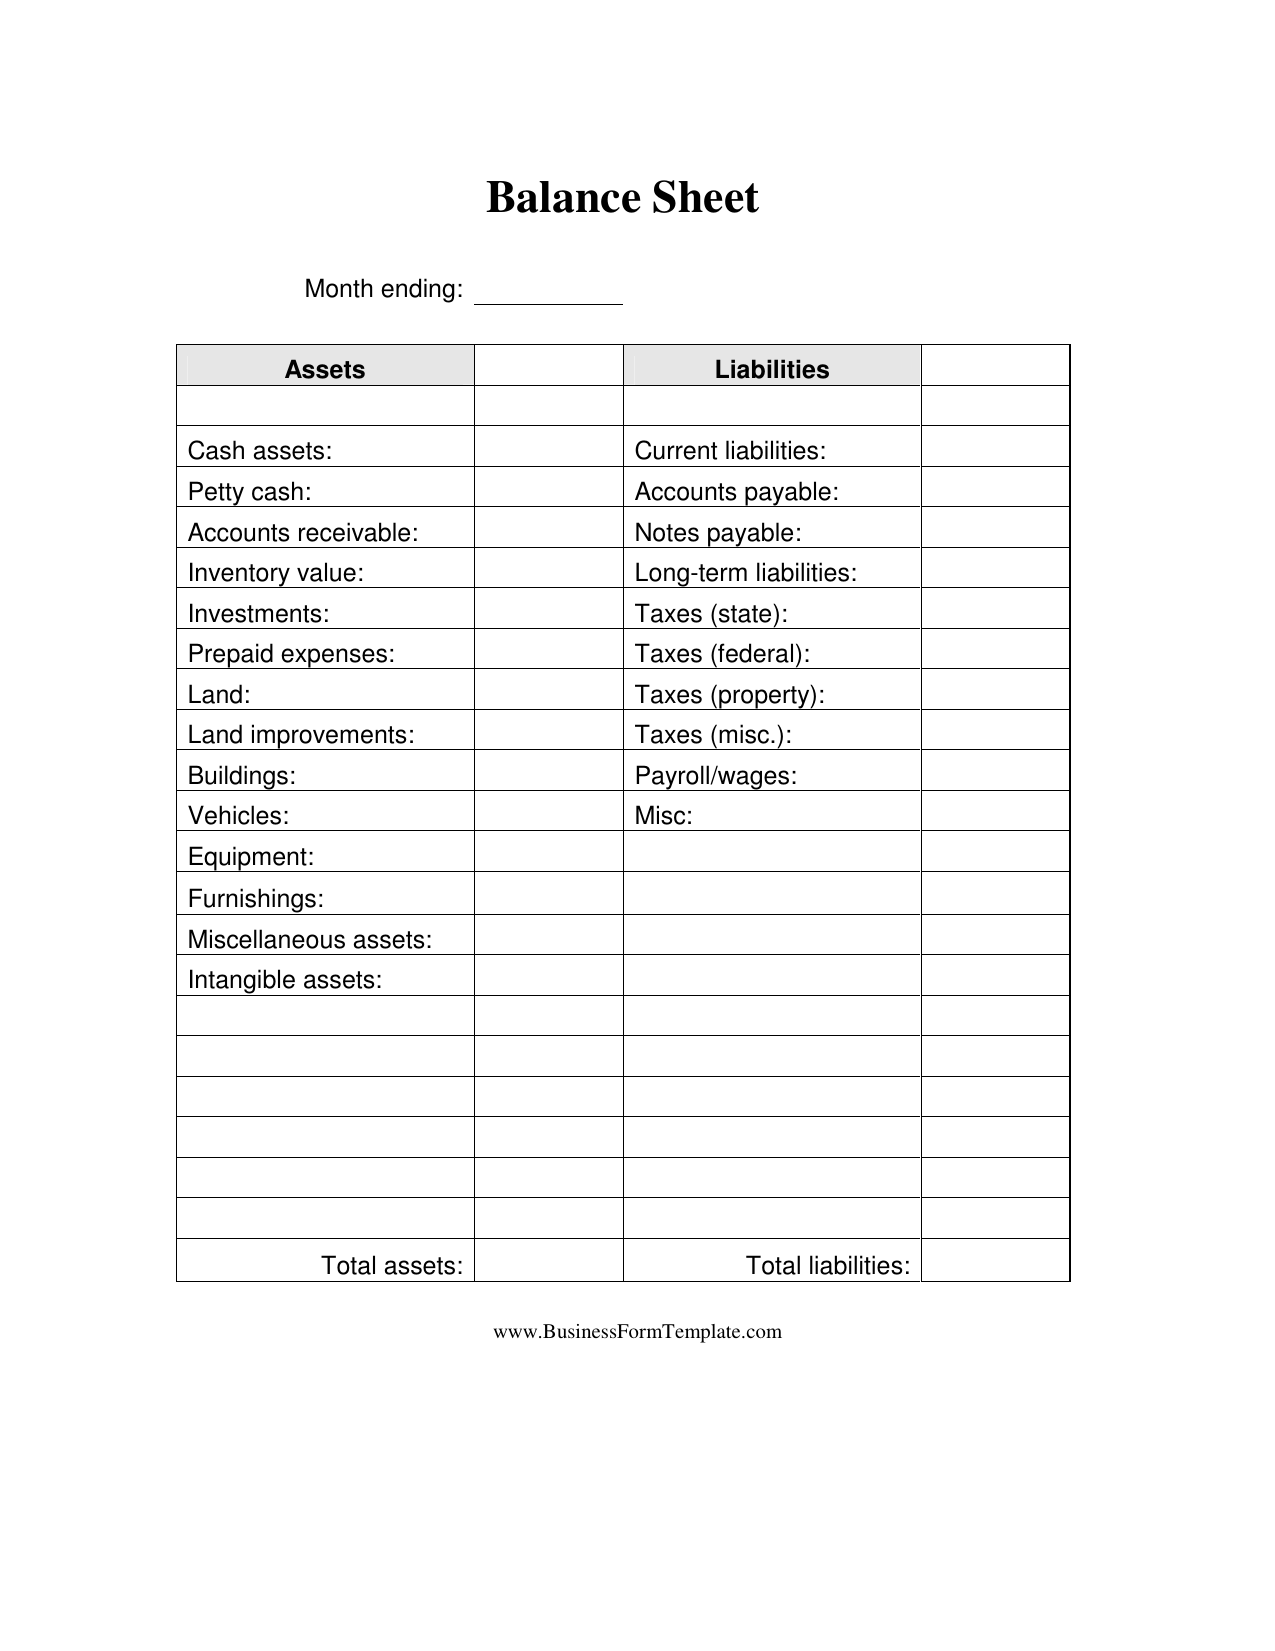 balance sheet format pdf download